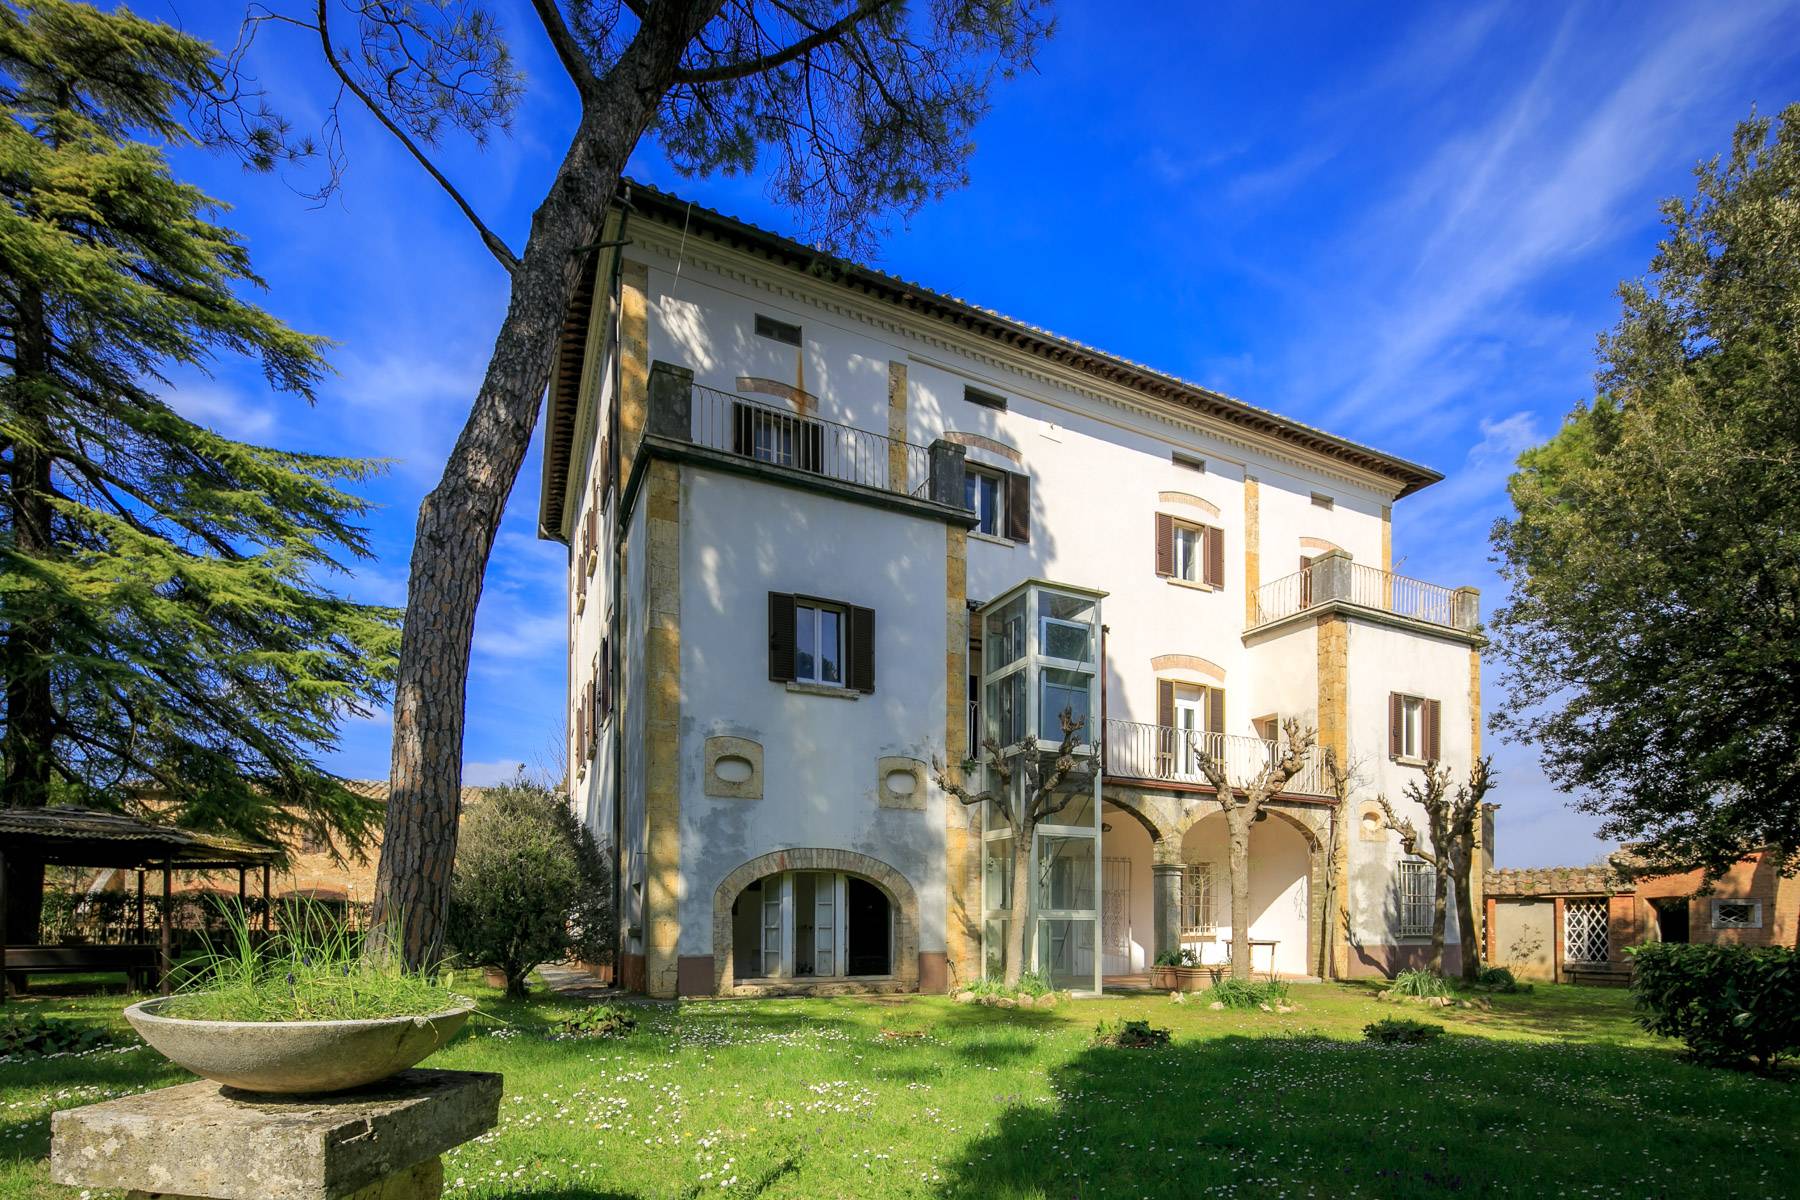 Villa in Vendita a Montepulciano: 5 locali, 2400 mq - Foto 28